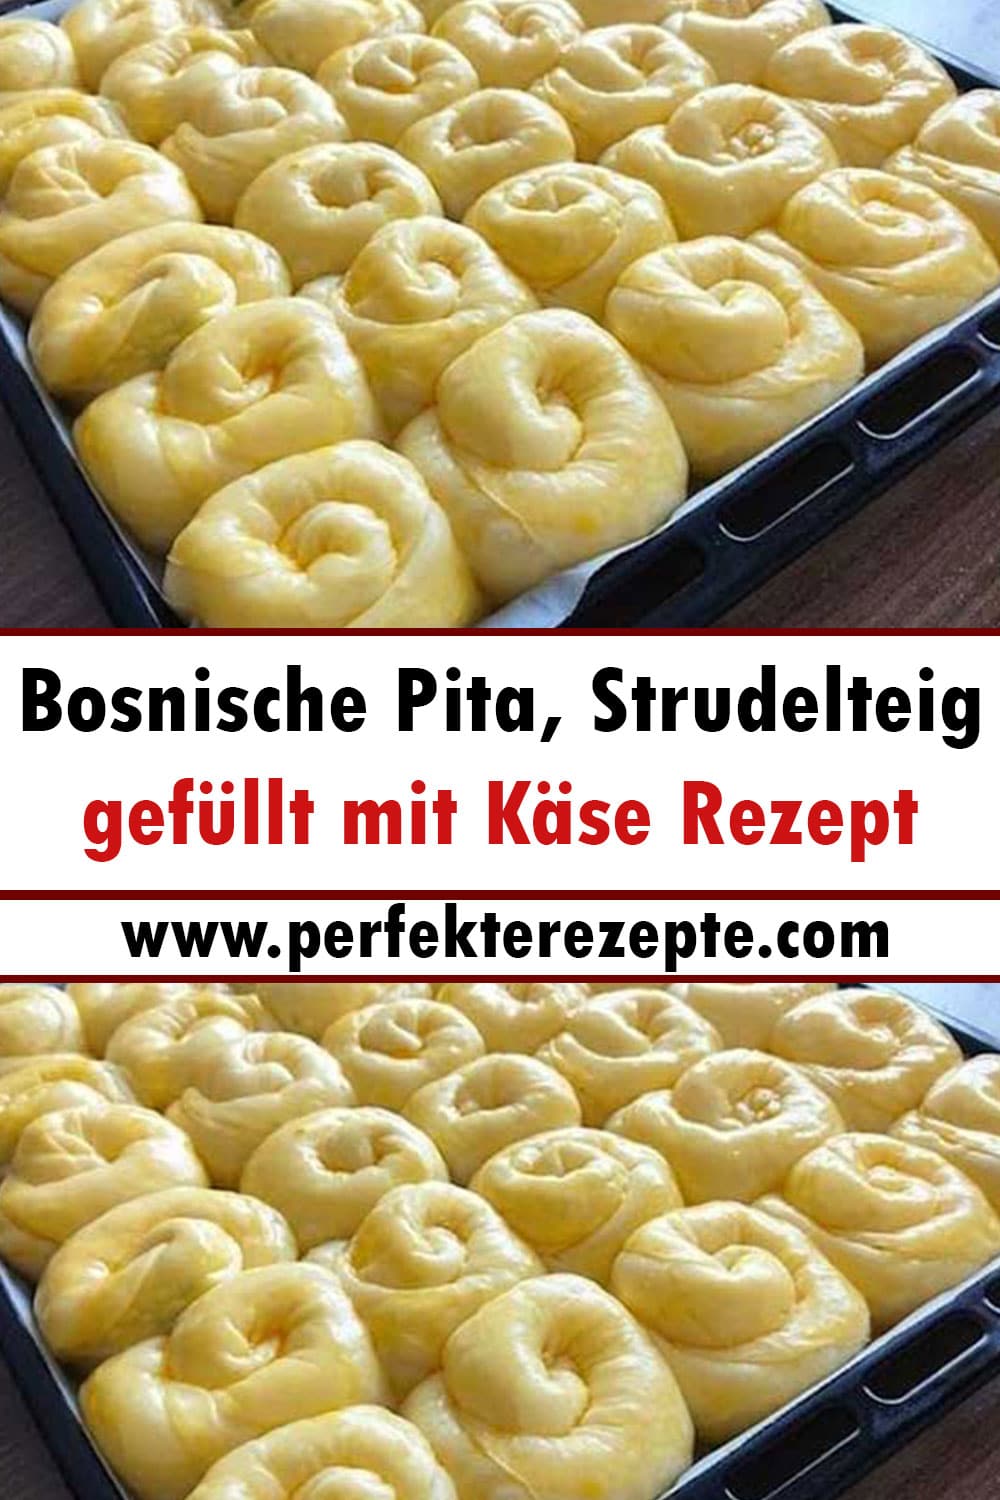 Bosnische Pita, Strudelteig gefüllt mit Käse Rezept